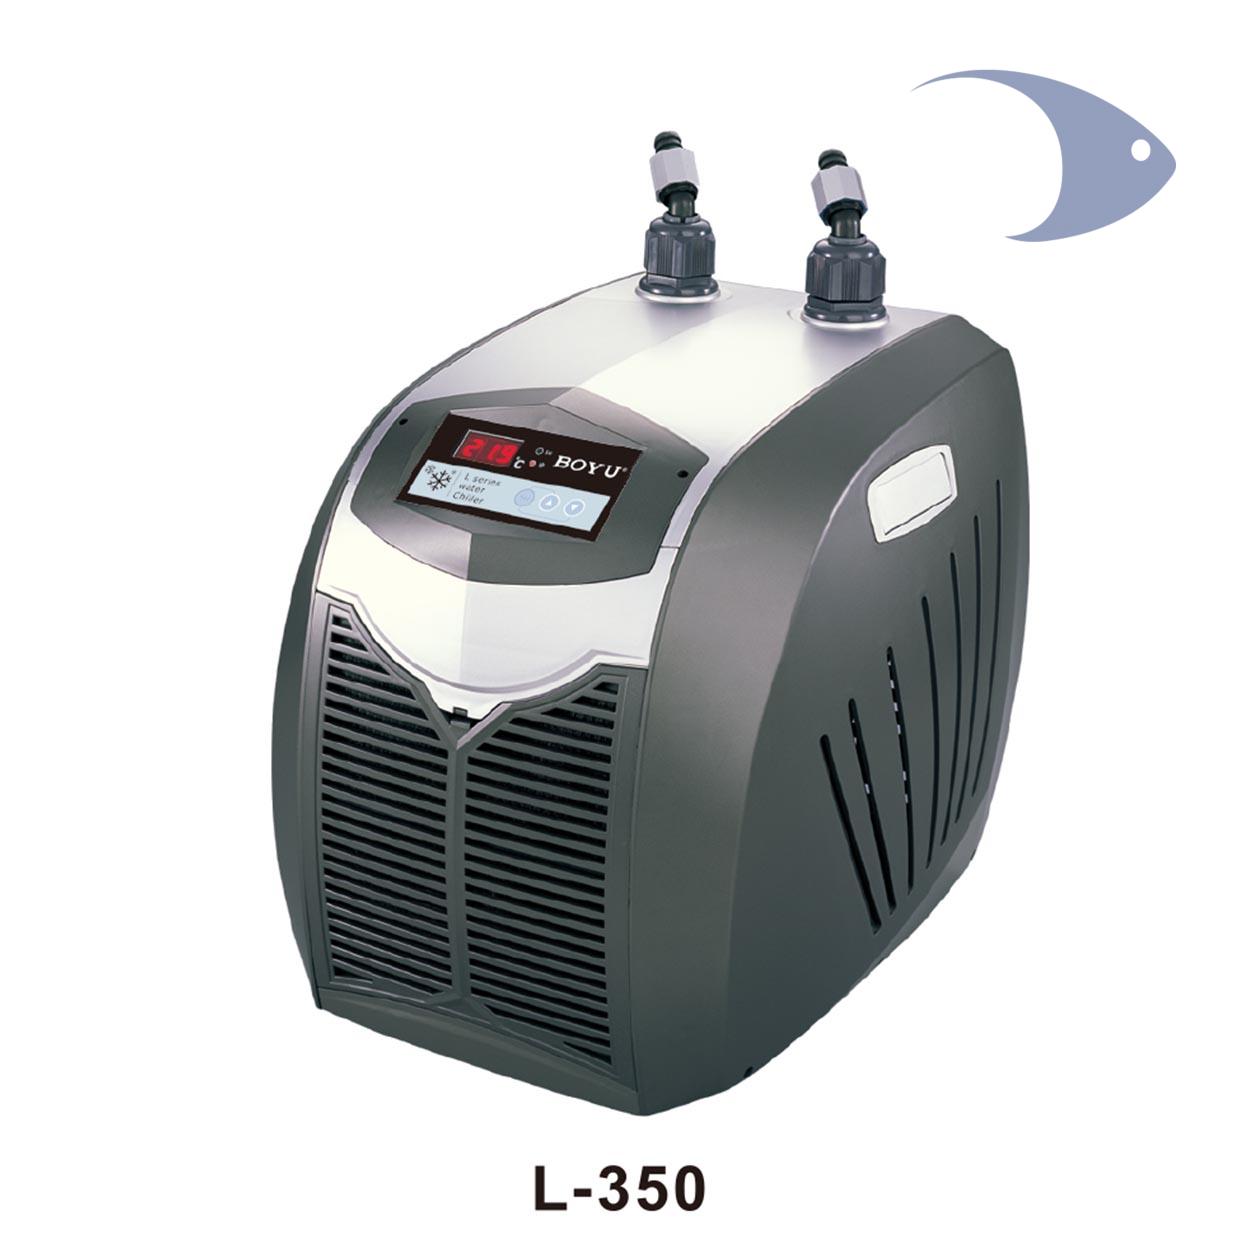 Compresor de aire a 12V ACQ de BOYU. Eficiente y práctico